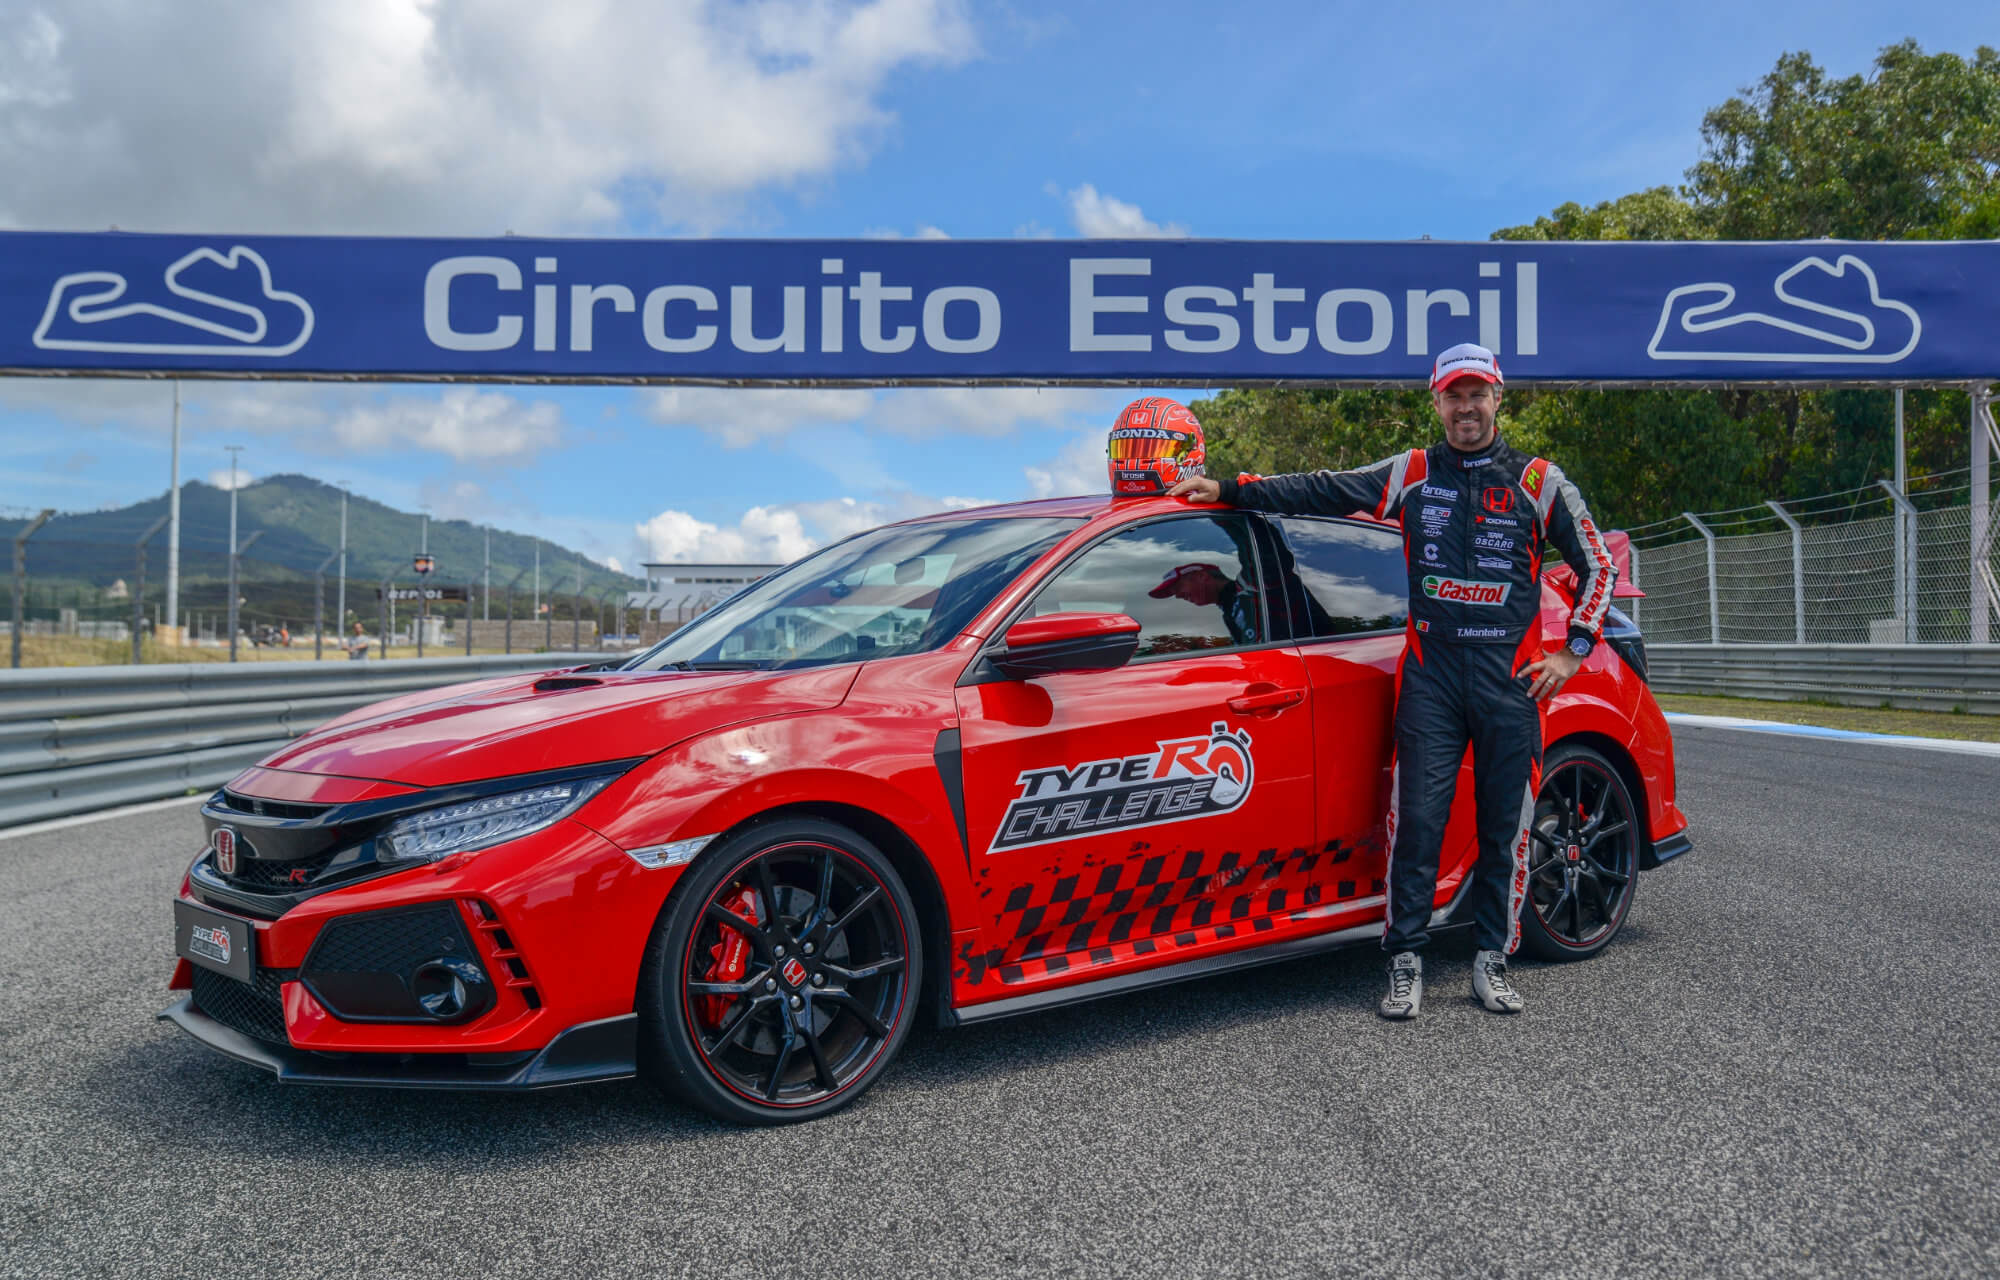 Honda Civic Type R sets new lap record at Estoril Circuit in Portugal